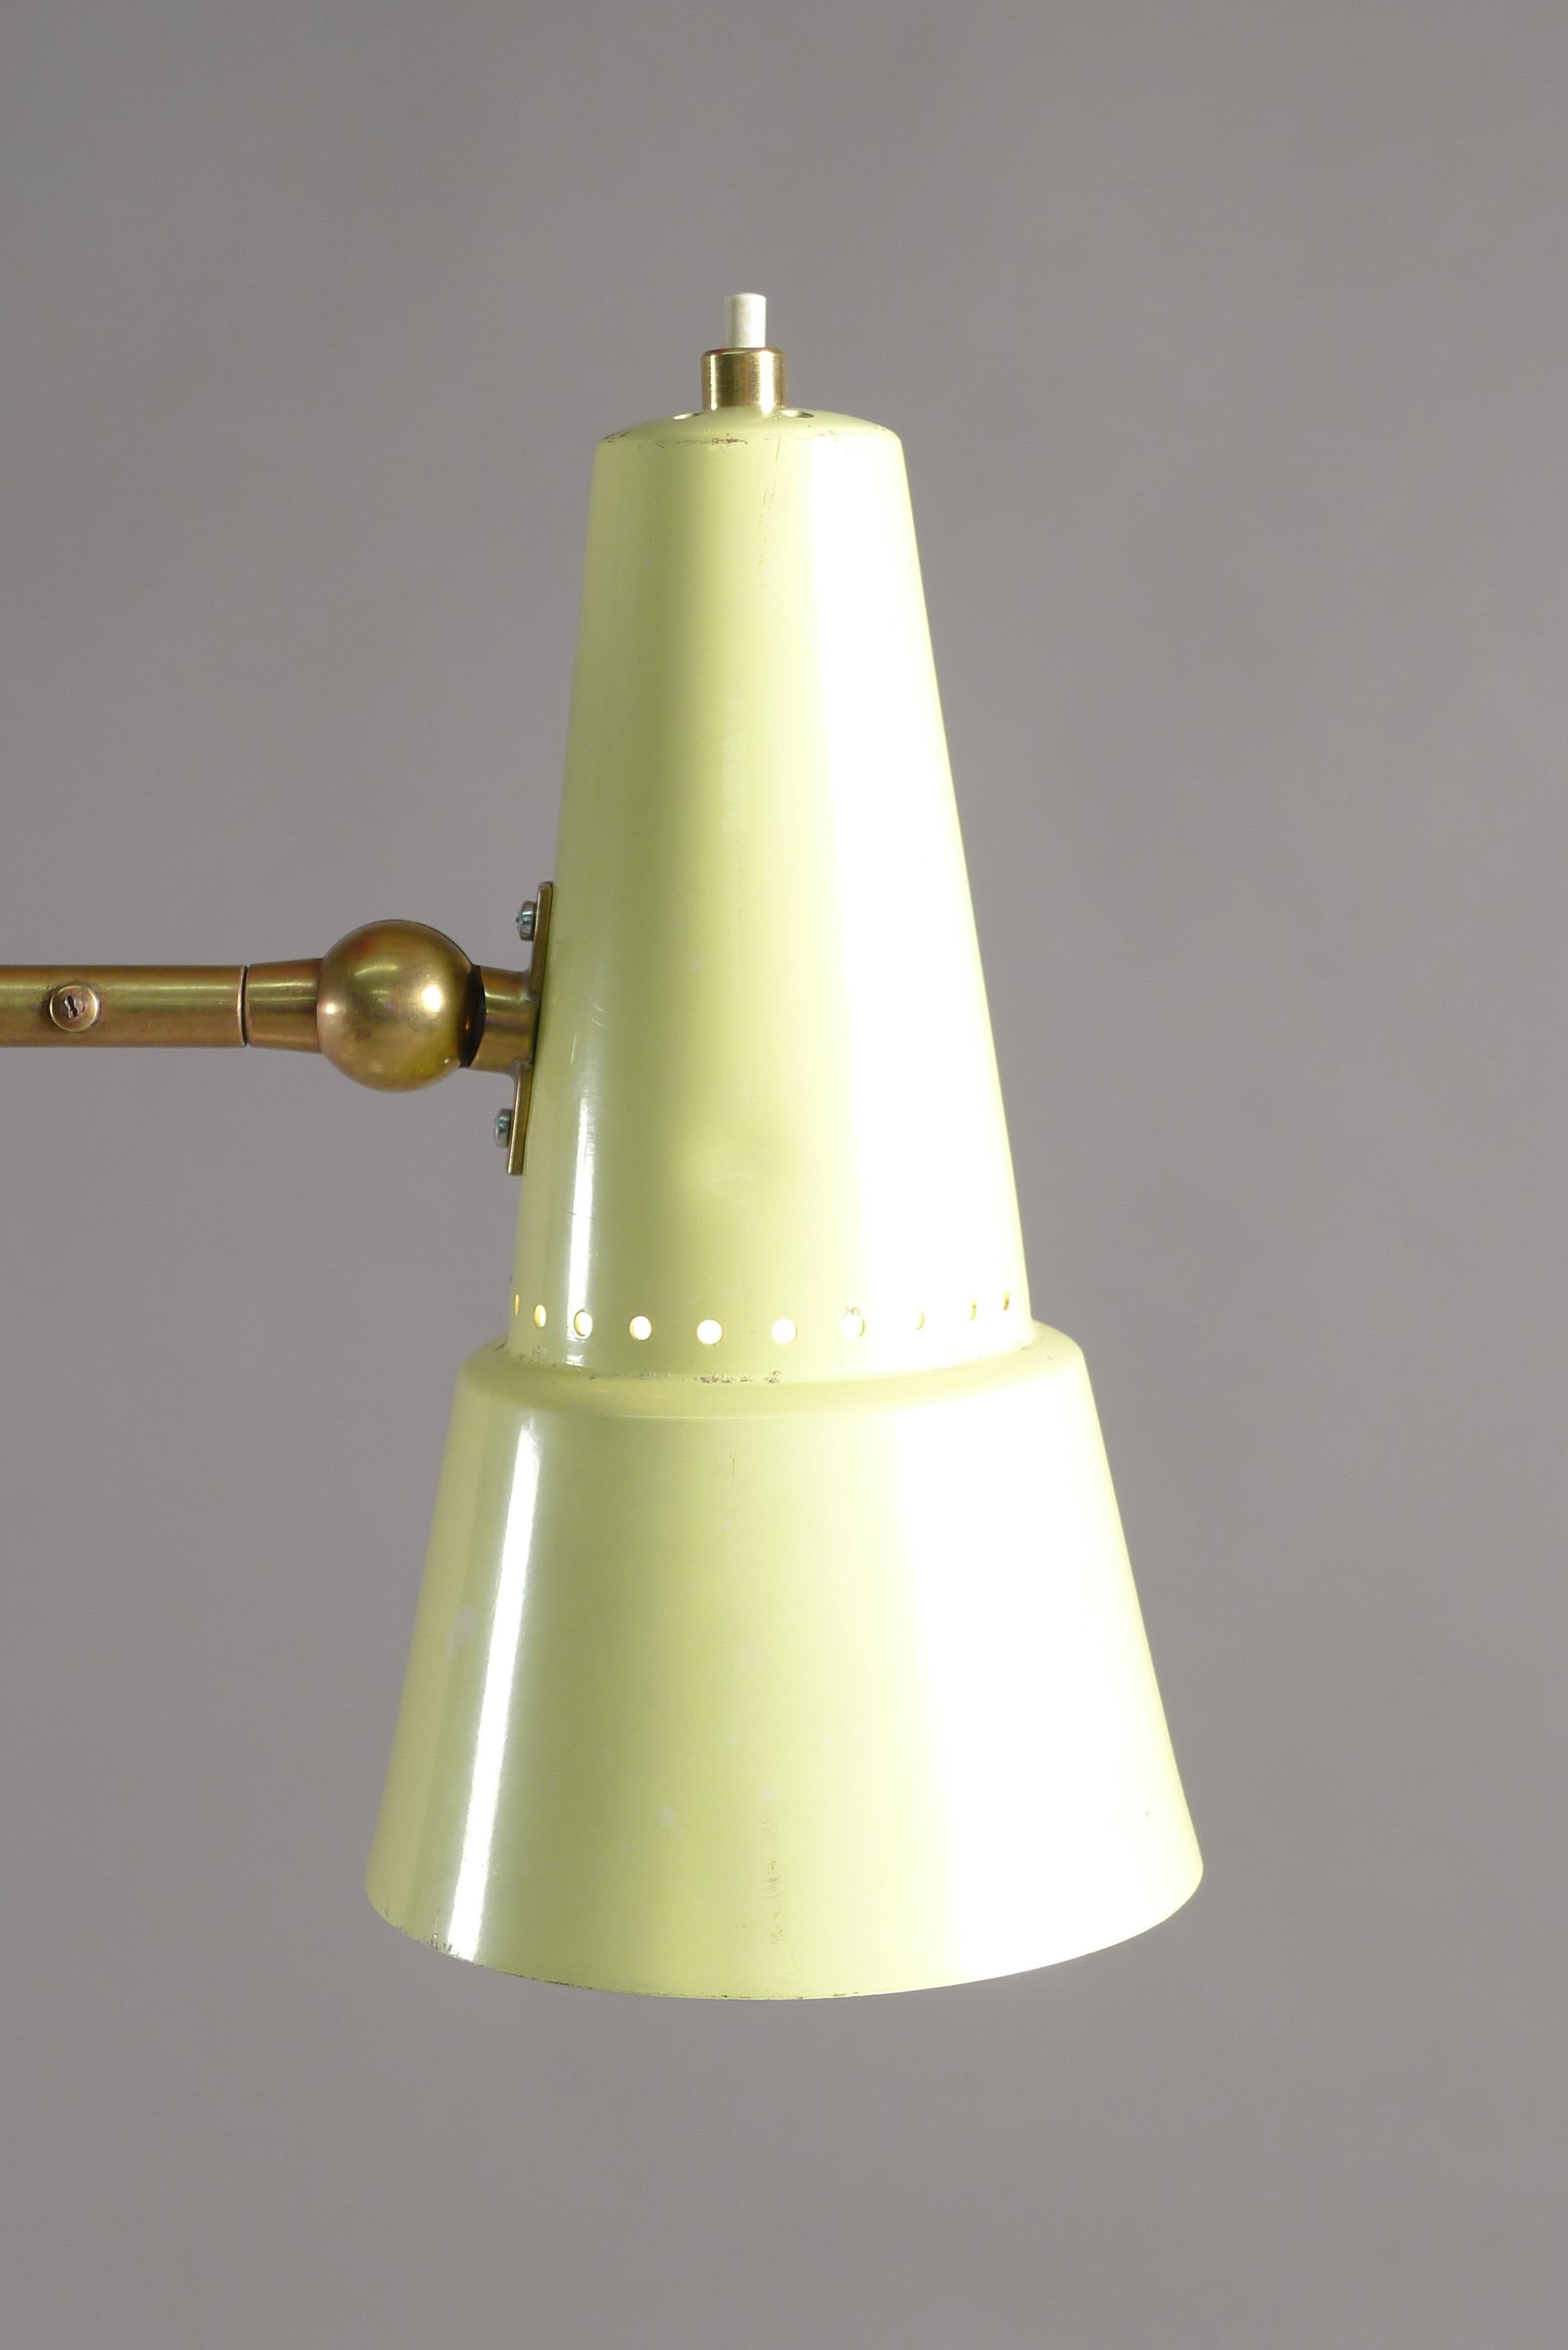 Stilnovo, Italie, vers 1955. Un lampadaire avec pied en marbre soutenant une tige verticale inclinée avec un grand luminaire rouge sur le dessus et un bras pivotant en laiton se terminant par un abat-jour émaillé jaune qui pivote dans toutes les